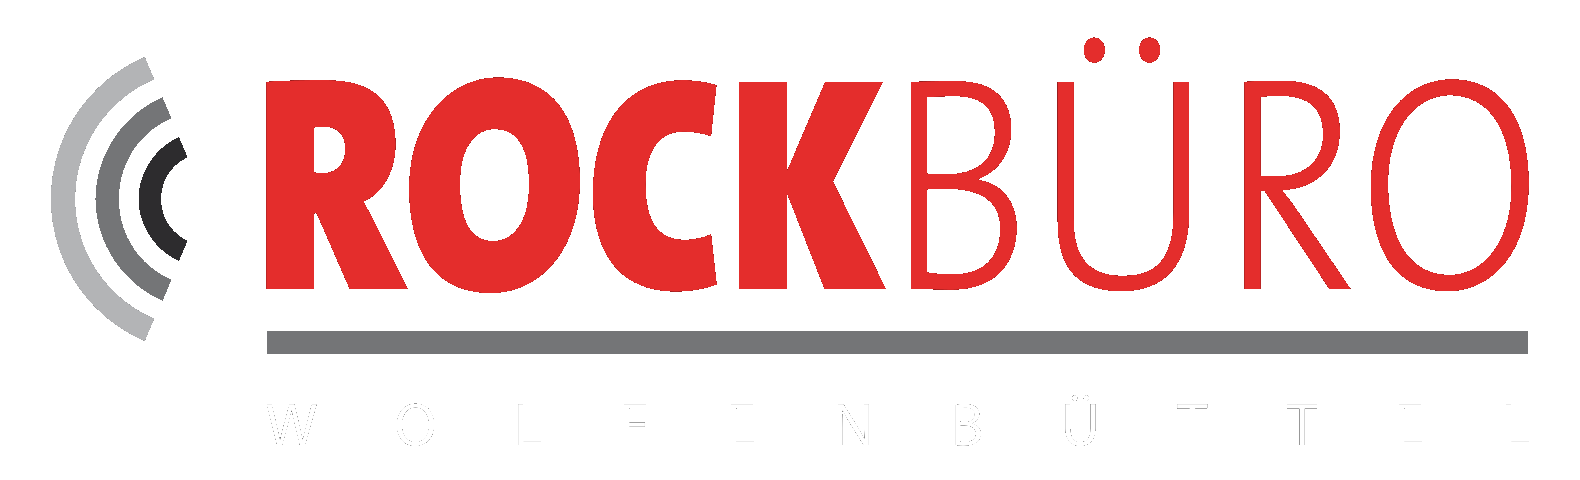 RB logo schrift weiss